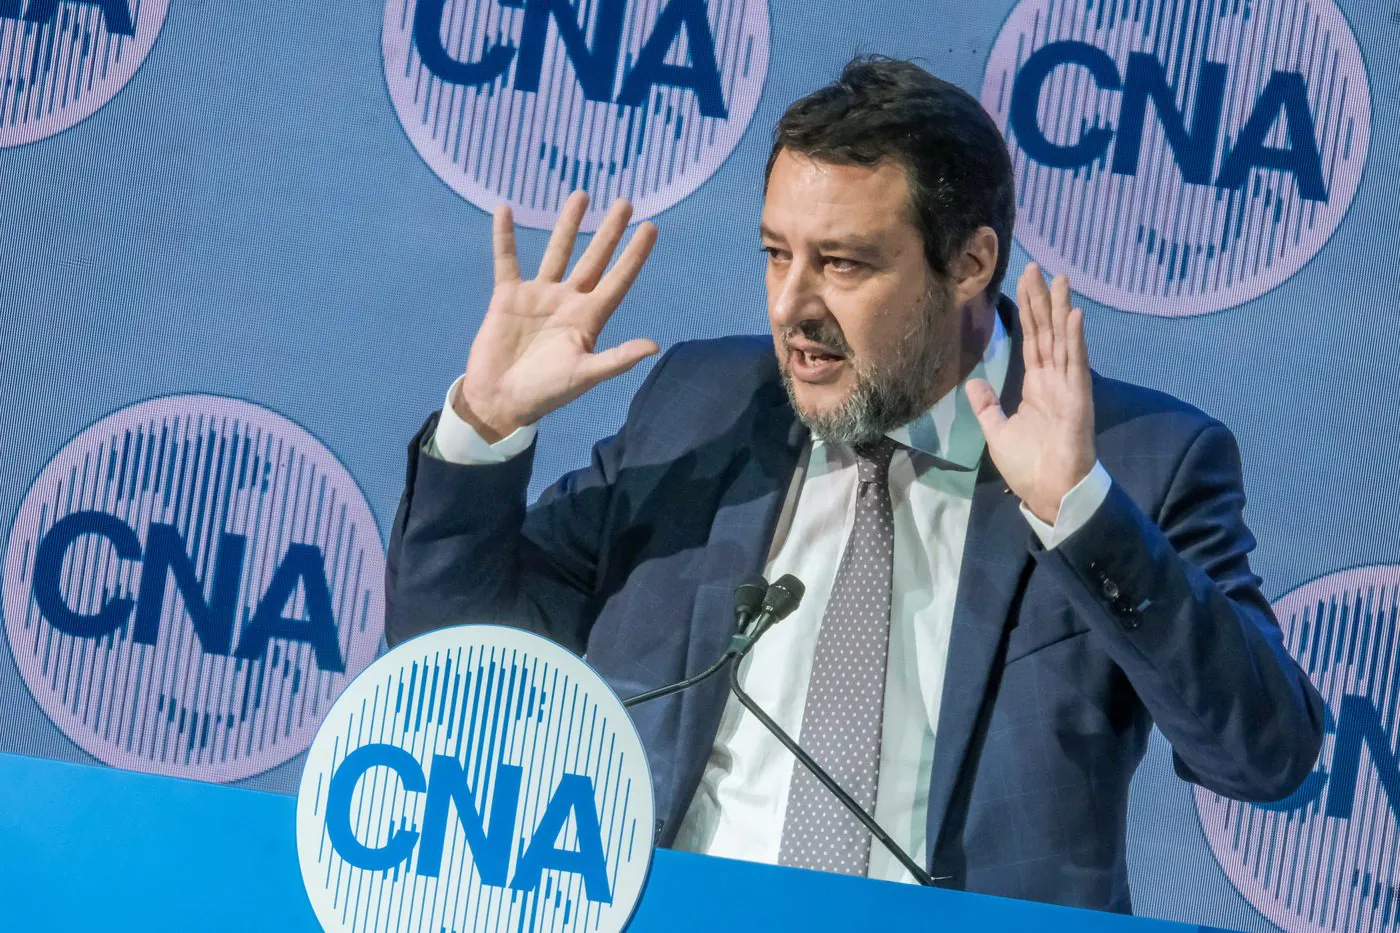 Il 25 Aprile Matteo Salvini presenterà il suo libro a Milano (e potrebbe annunciare la candidatura di Vannacci)